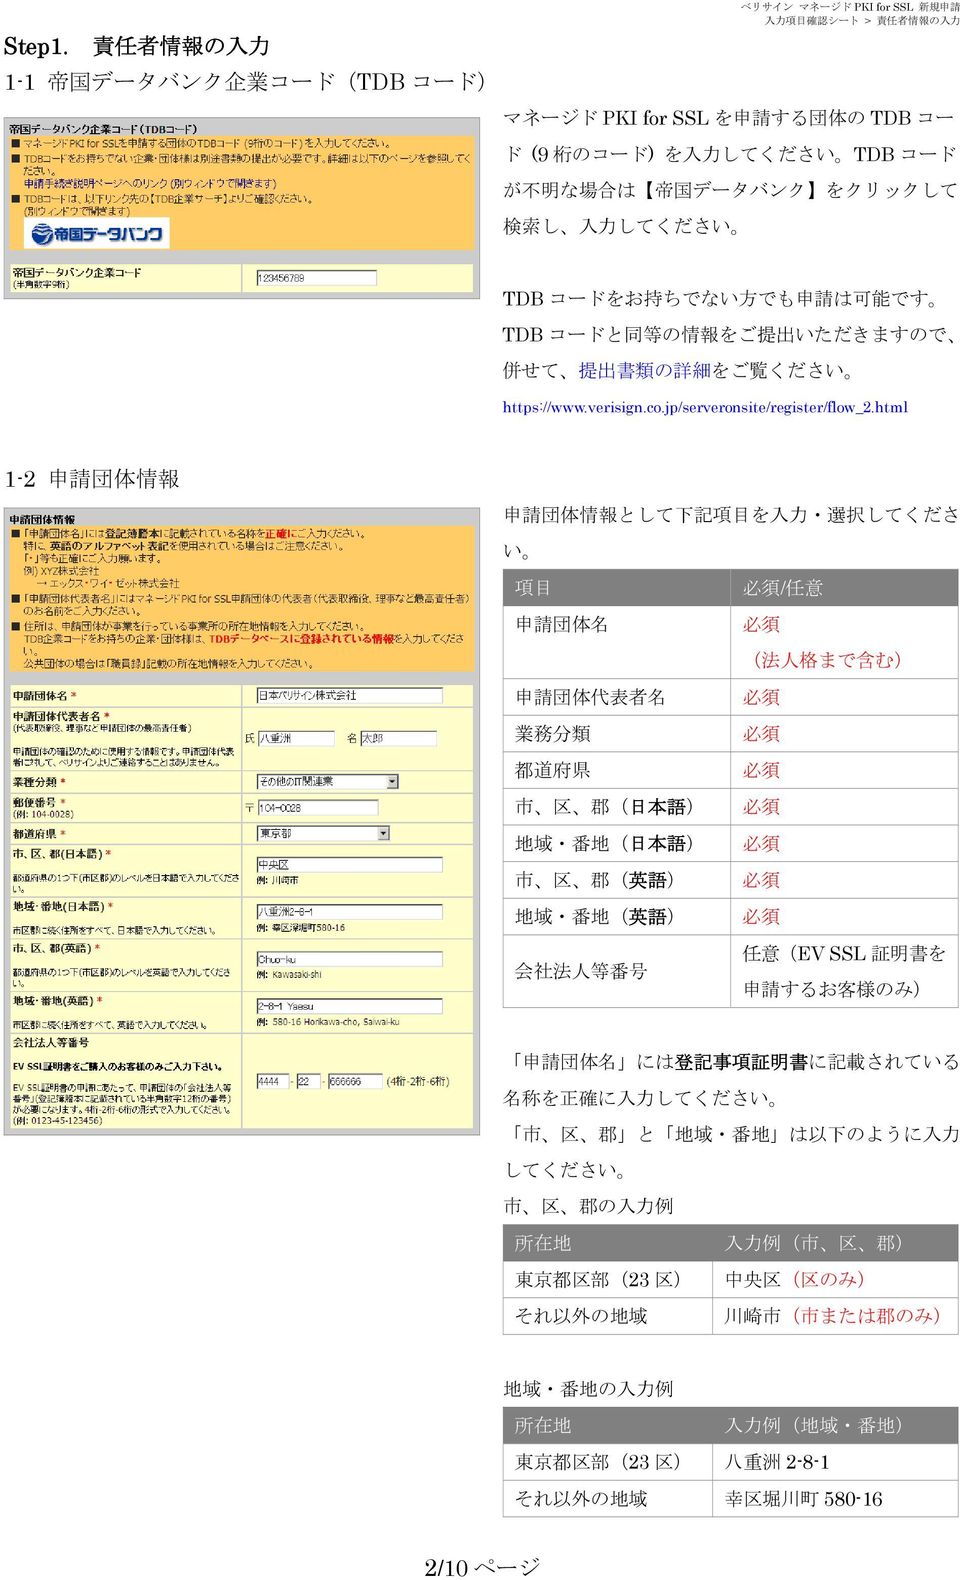 は 帝 国 データバンク をクリックして 検 索 し 入 力 してください TDB コードをお 持 ちでない 方 でも 申 請 は 可 能 です TDB コードと 同 等 の 情 報 をご 提 出 いただきますので 併 せて 提 出 書 類 の 詳 細 をご 覧 ください https://www.verisign.co.jp/serveronsite/register/flow_2.